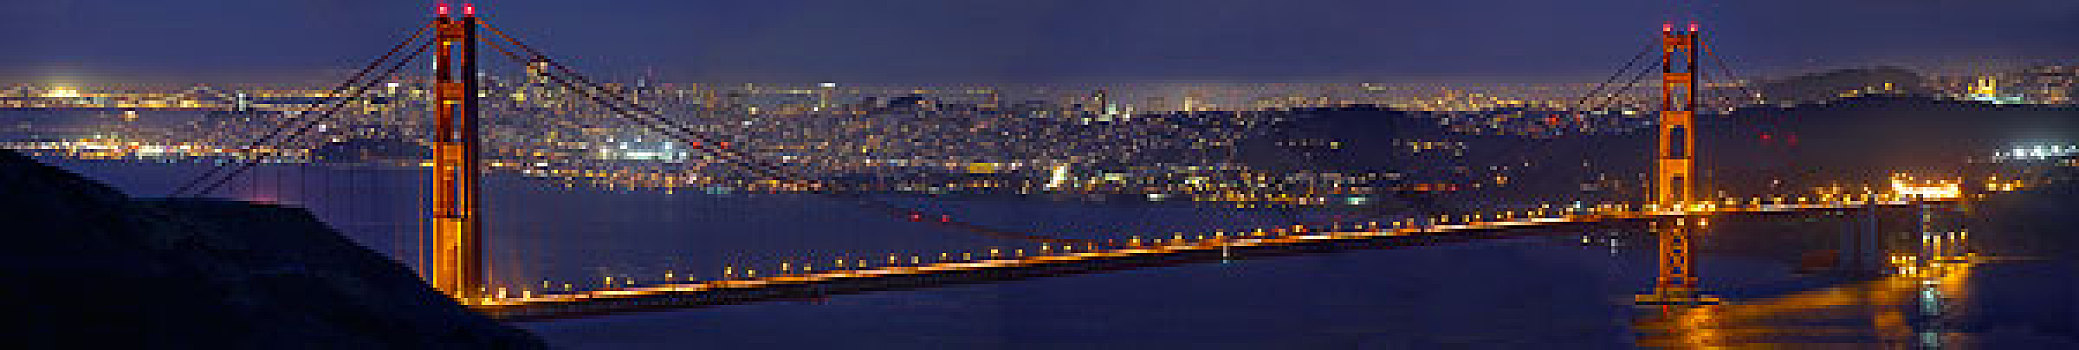 美国,加利福尼亚,金门大桥,夜晚,旧金山,远景,大幅,尺寸